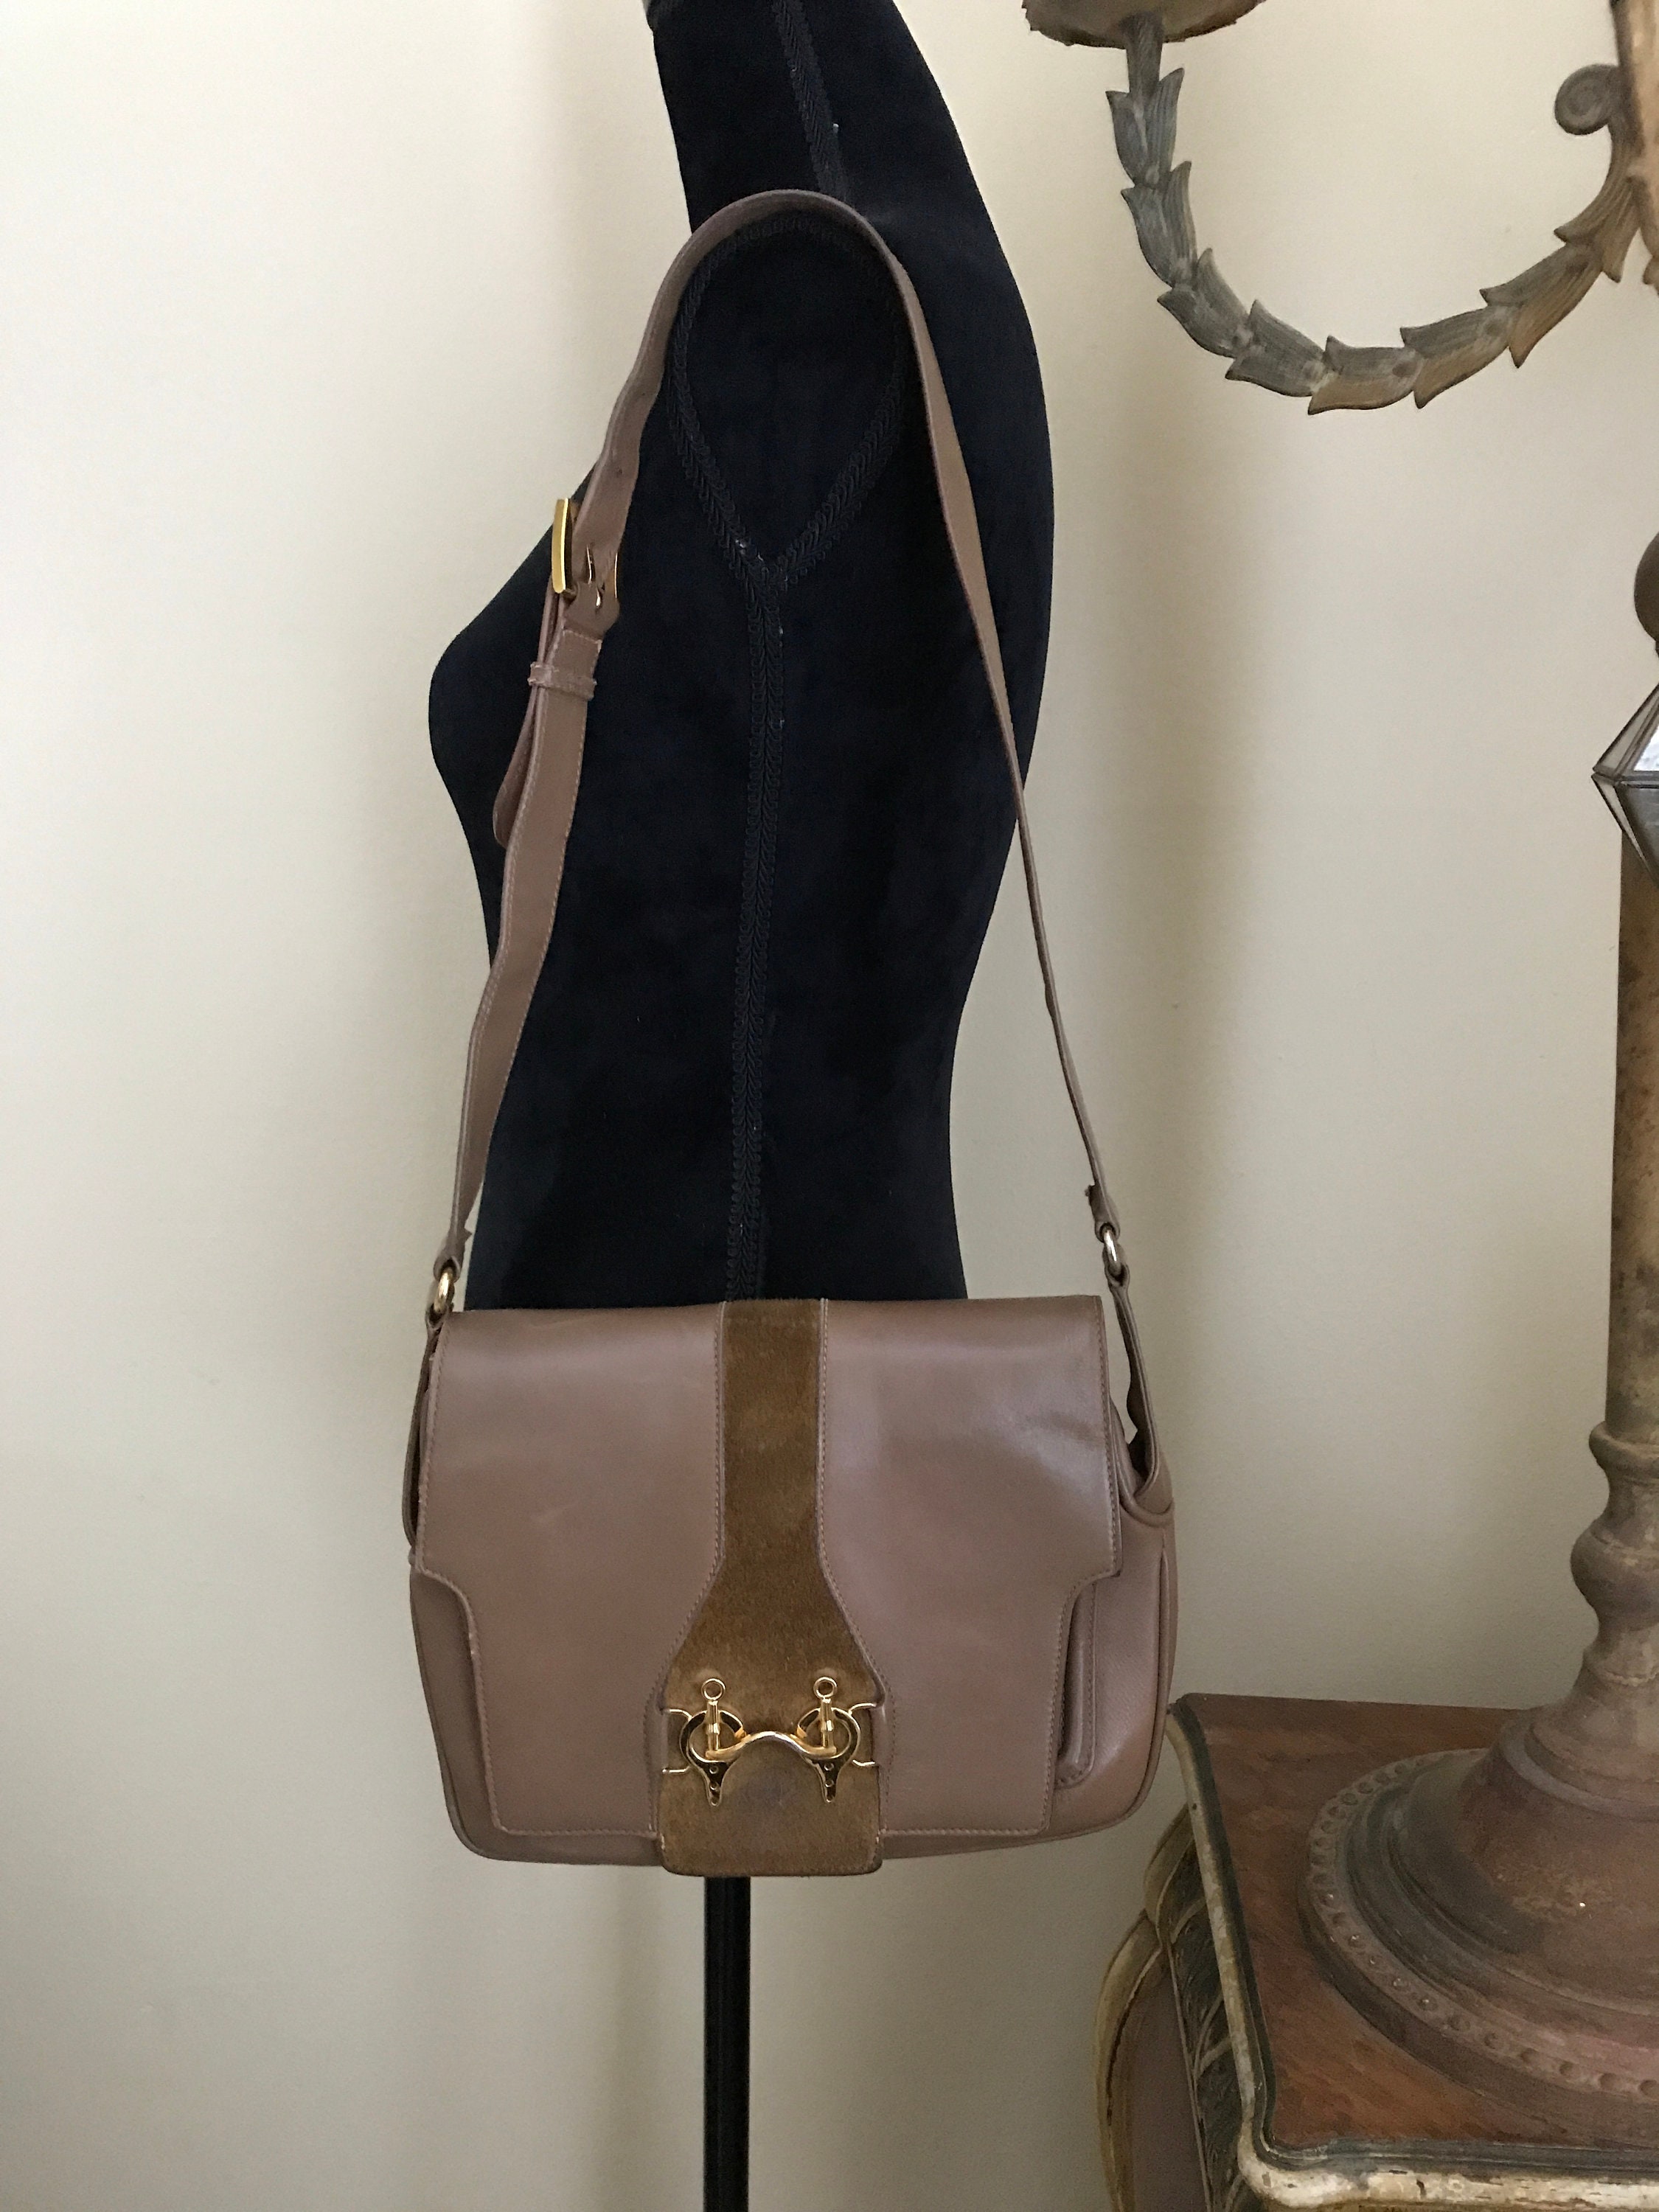 Gucci Suede Web Boston Bag - Brown Handle Bags, Handbags - GUC1330500